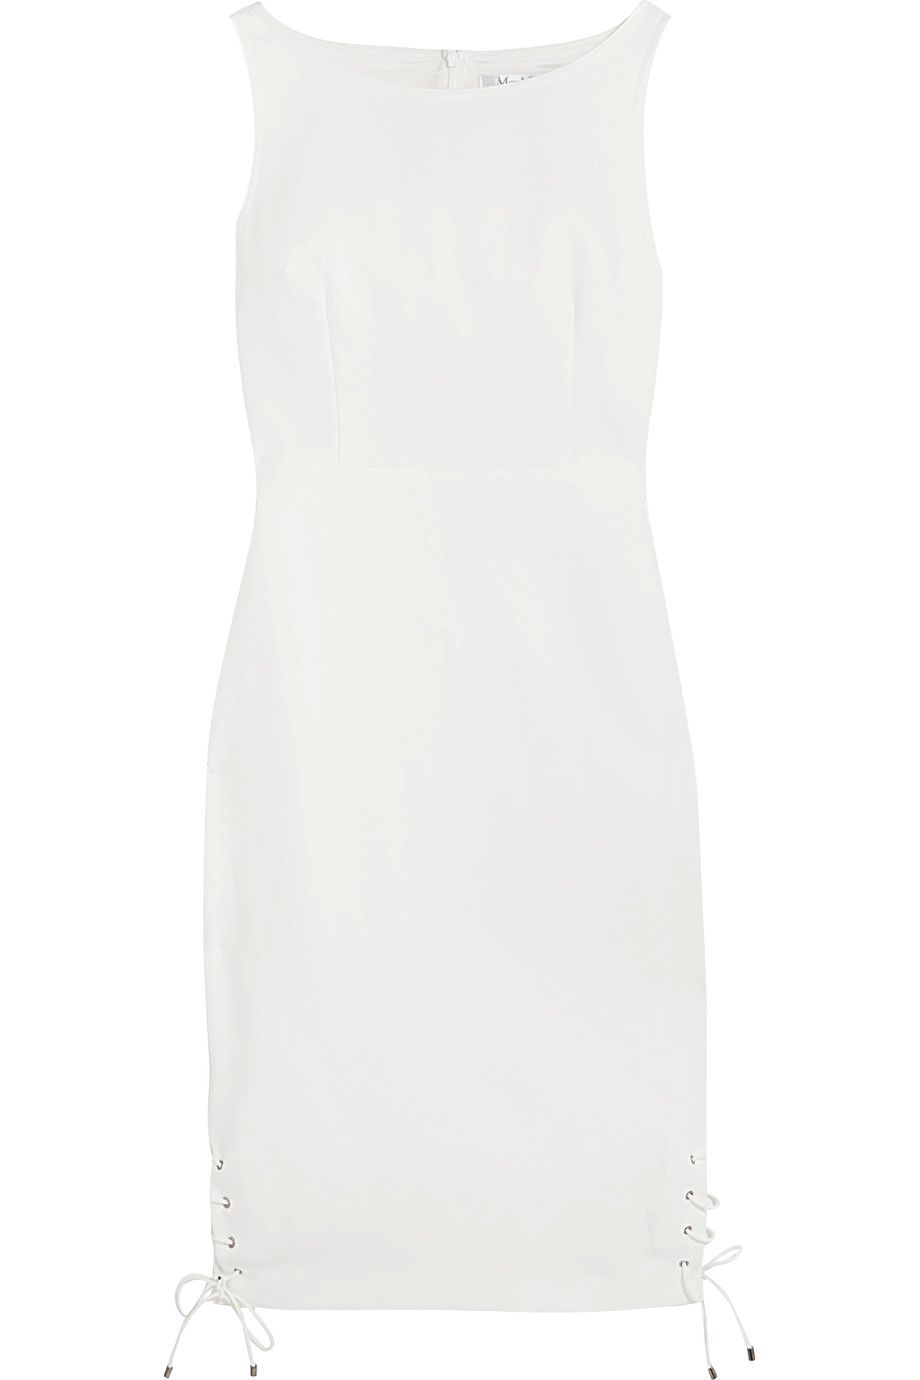 Moda in bianco esatte 2017 con il tubino white di Max Mara